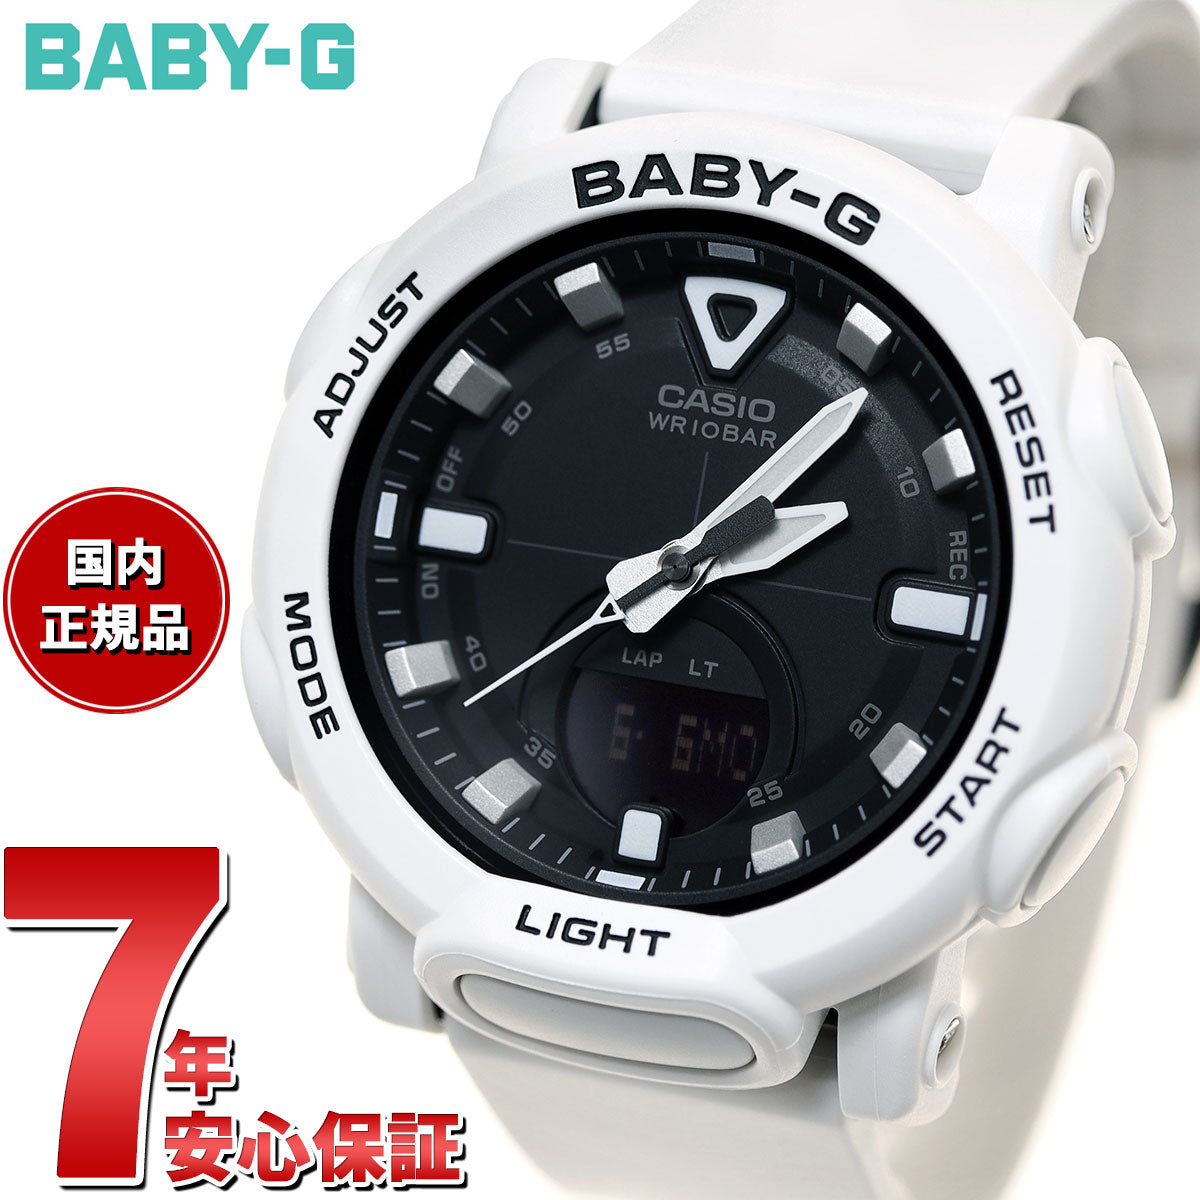 BABY-G カシオ ベビーG レディース 腕時計 BGA-310-7A2JF – neel